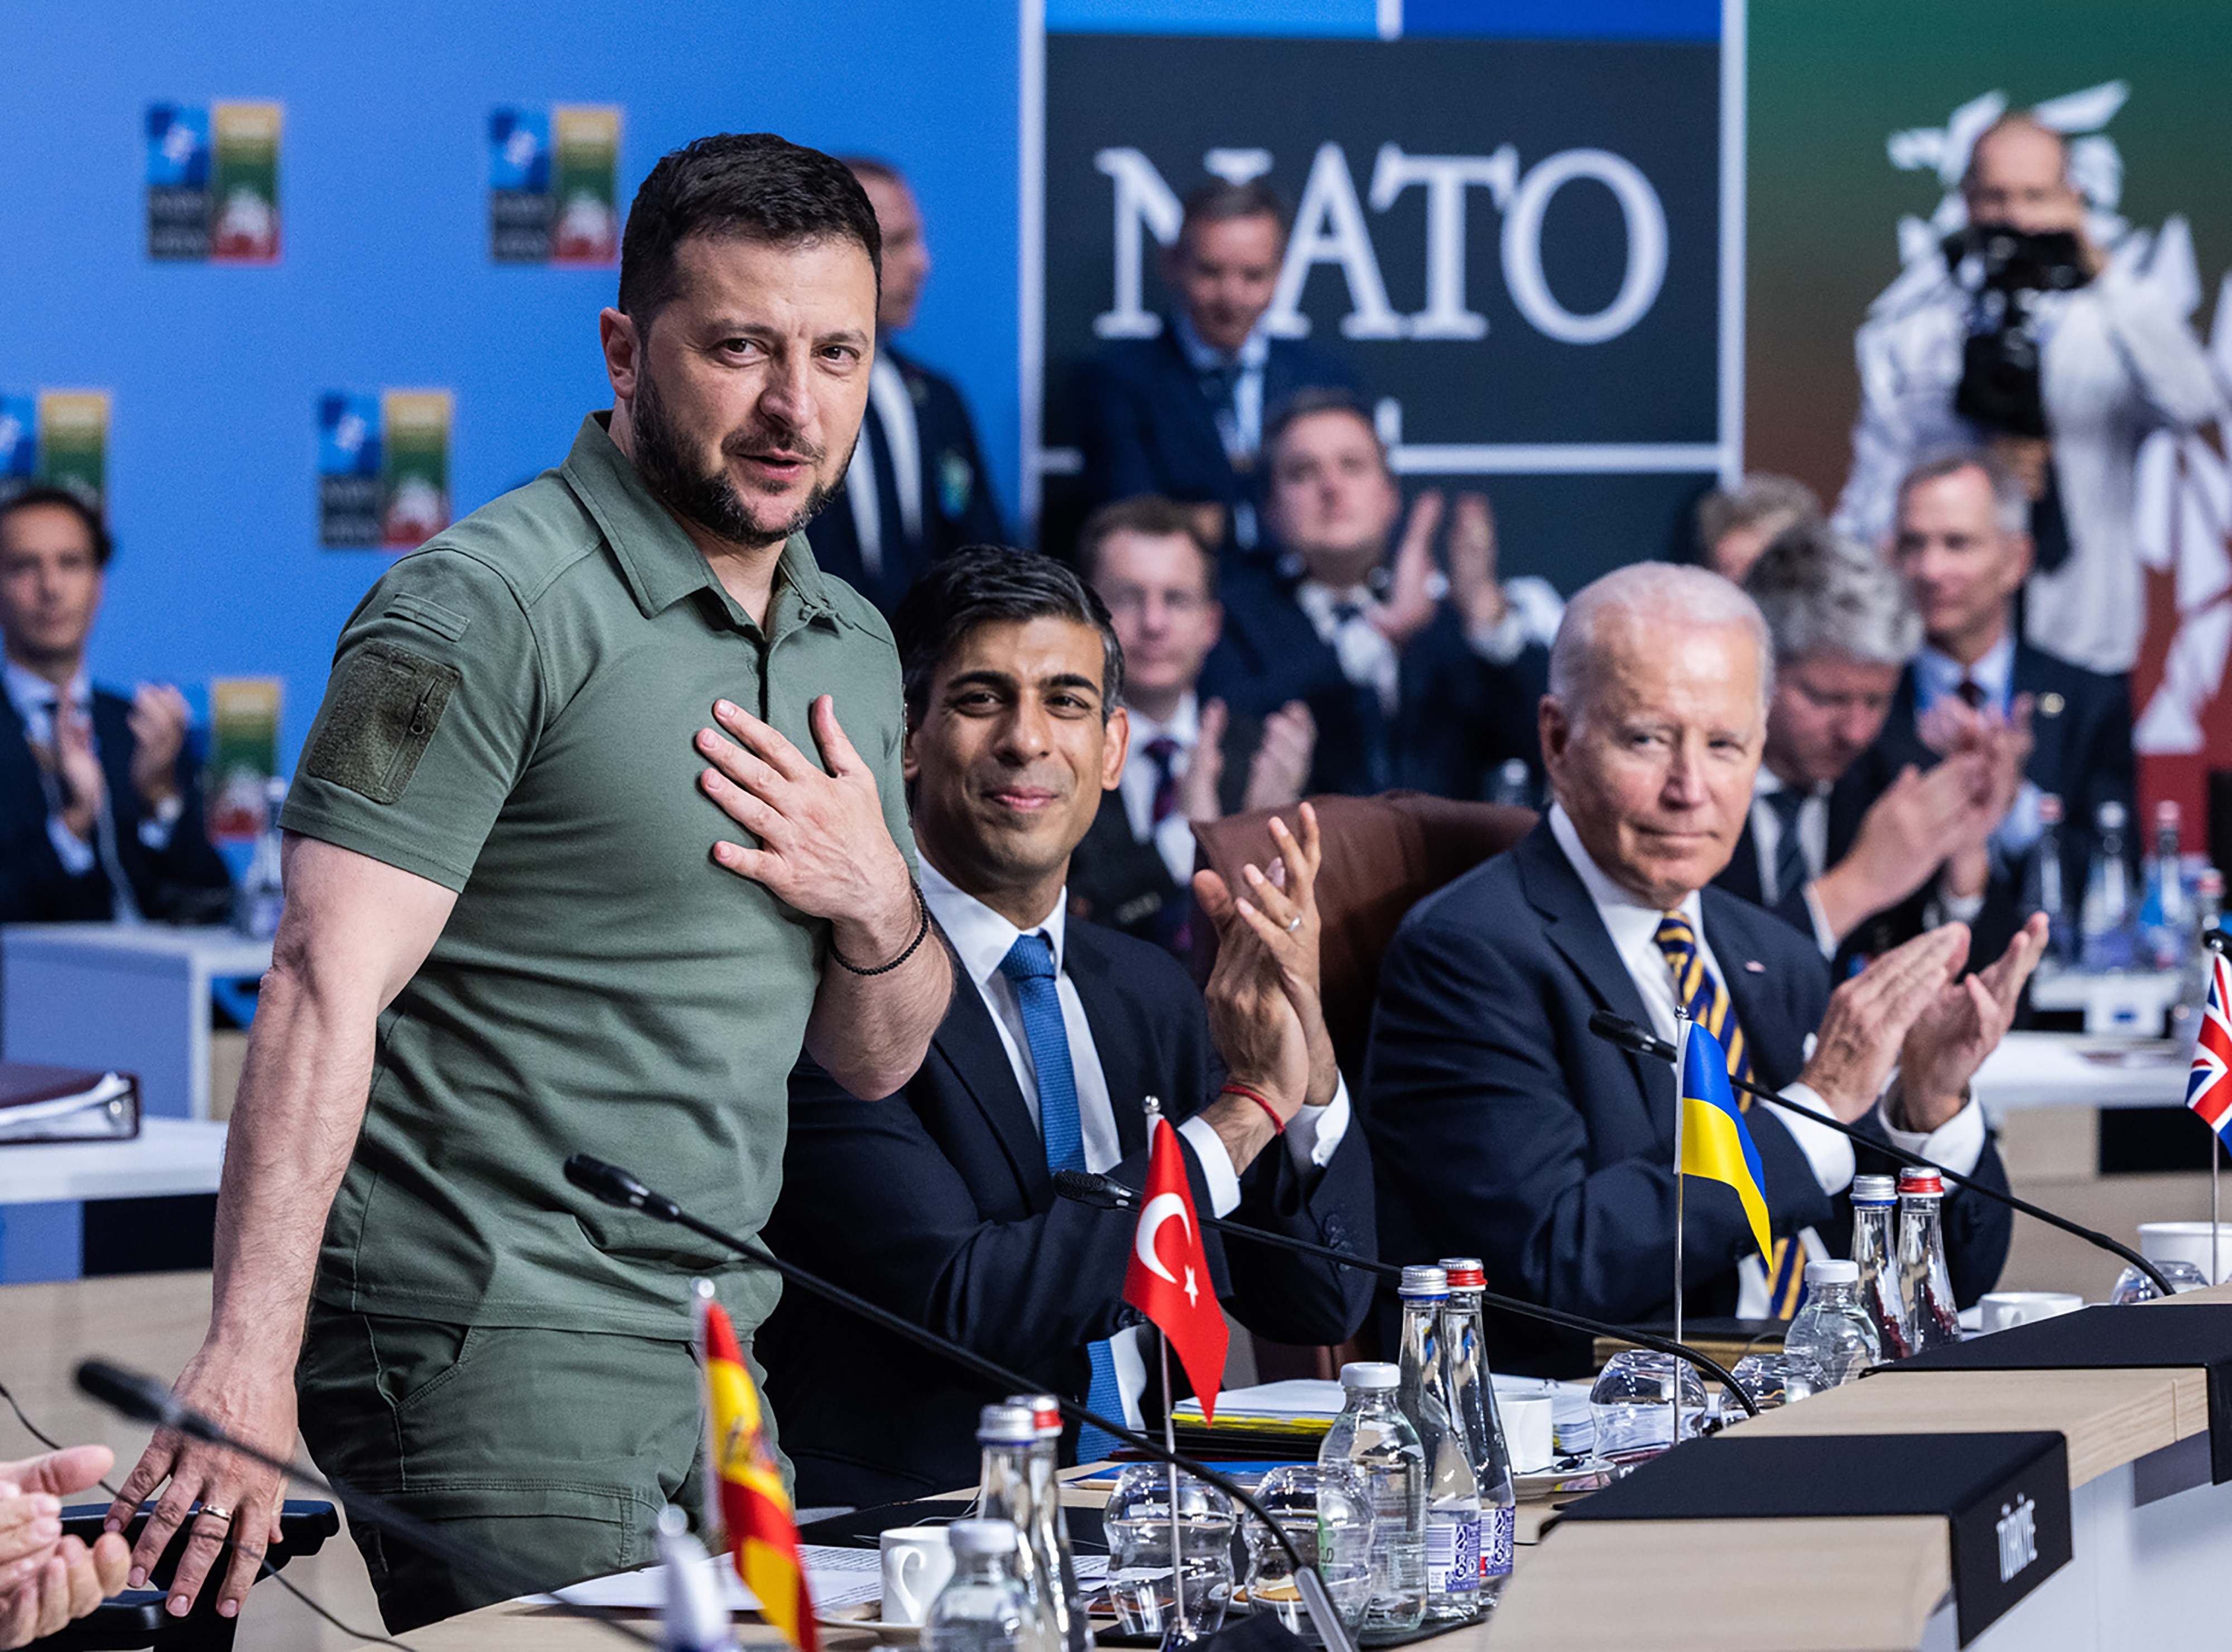 12일(현지시간) 볼로디미르 젤렌스키(왼쪽) 우크라이나 대통령이 리시 수낙(가운데) 영국 총리, 조 바이든(오른쪽) 미국 대통령과 함께 리투아니아 빌뉴스에서 열린 북대서양조약기구(NATO·나토) 정상회의 둘째 날 회의에 참석하고 있다. 2023.7.12 UPI 연합뉴스